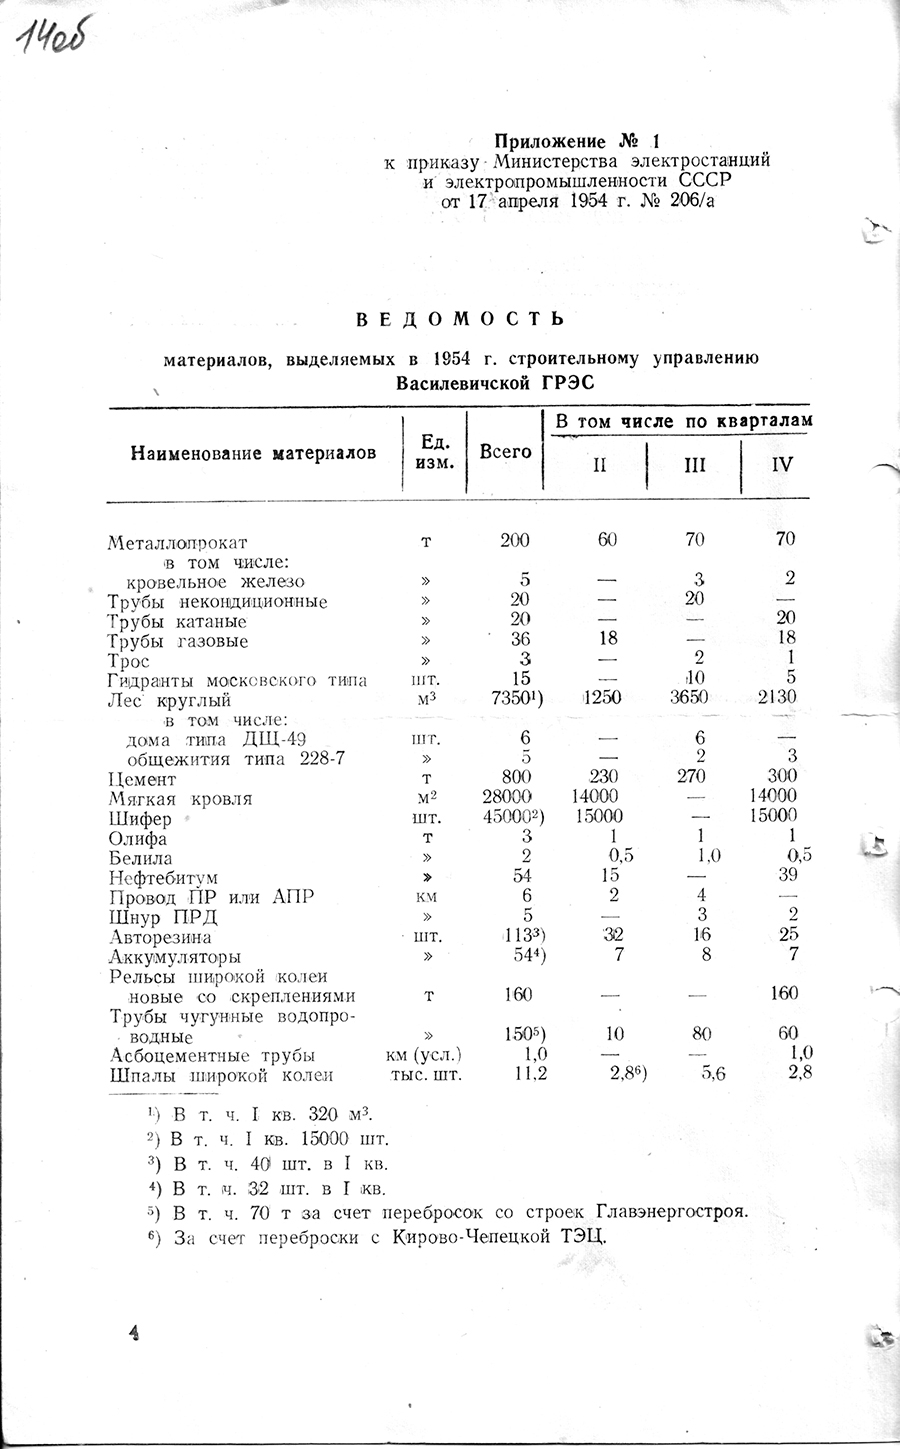 Befehl Nr. 206/a des Ministeriums für Kraftwerke und Elektroindustrie der UdSSR zur Forcierung des Baus des Wassilevich-Kraftwerks-с. 3